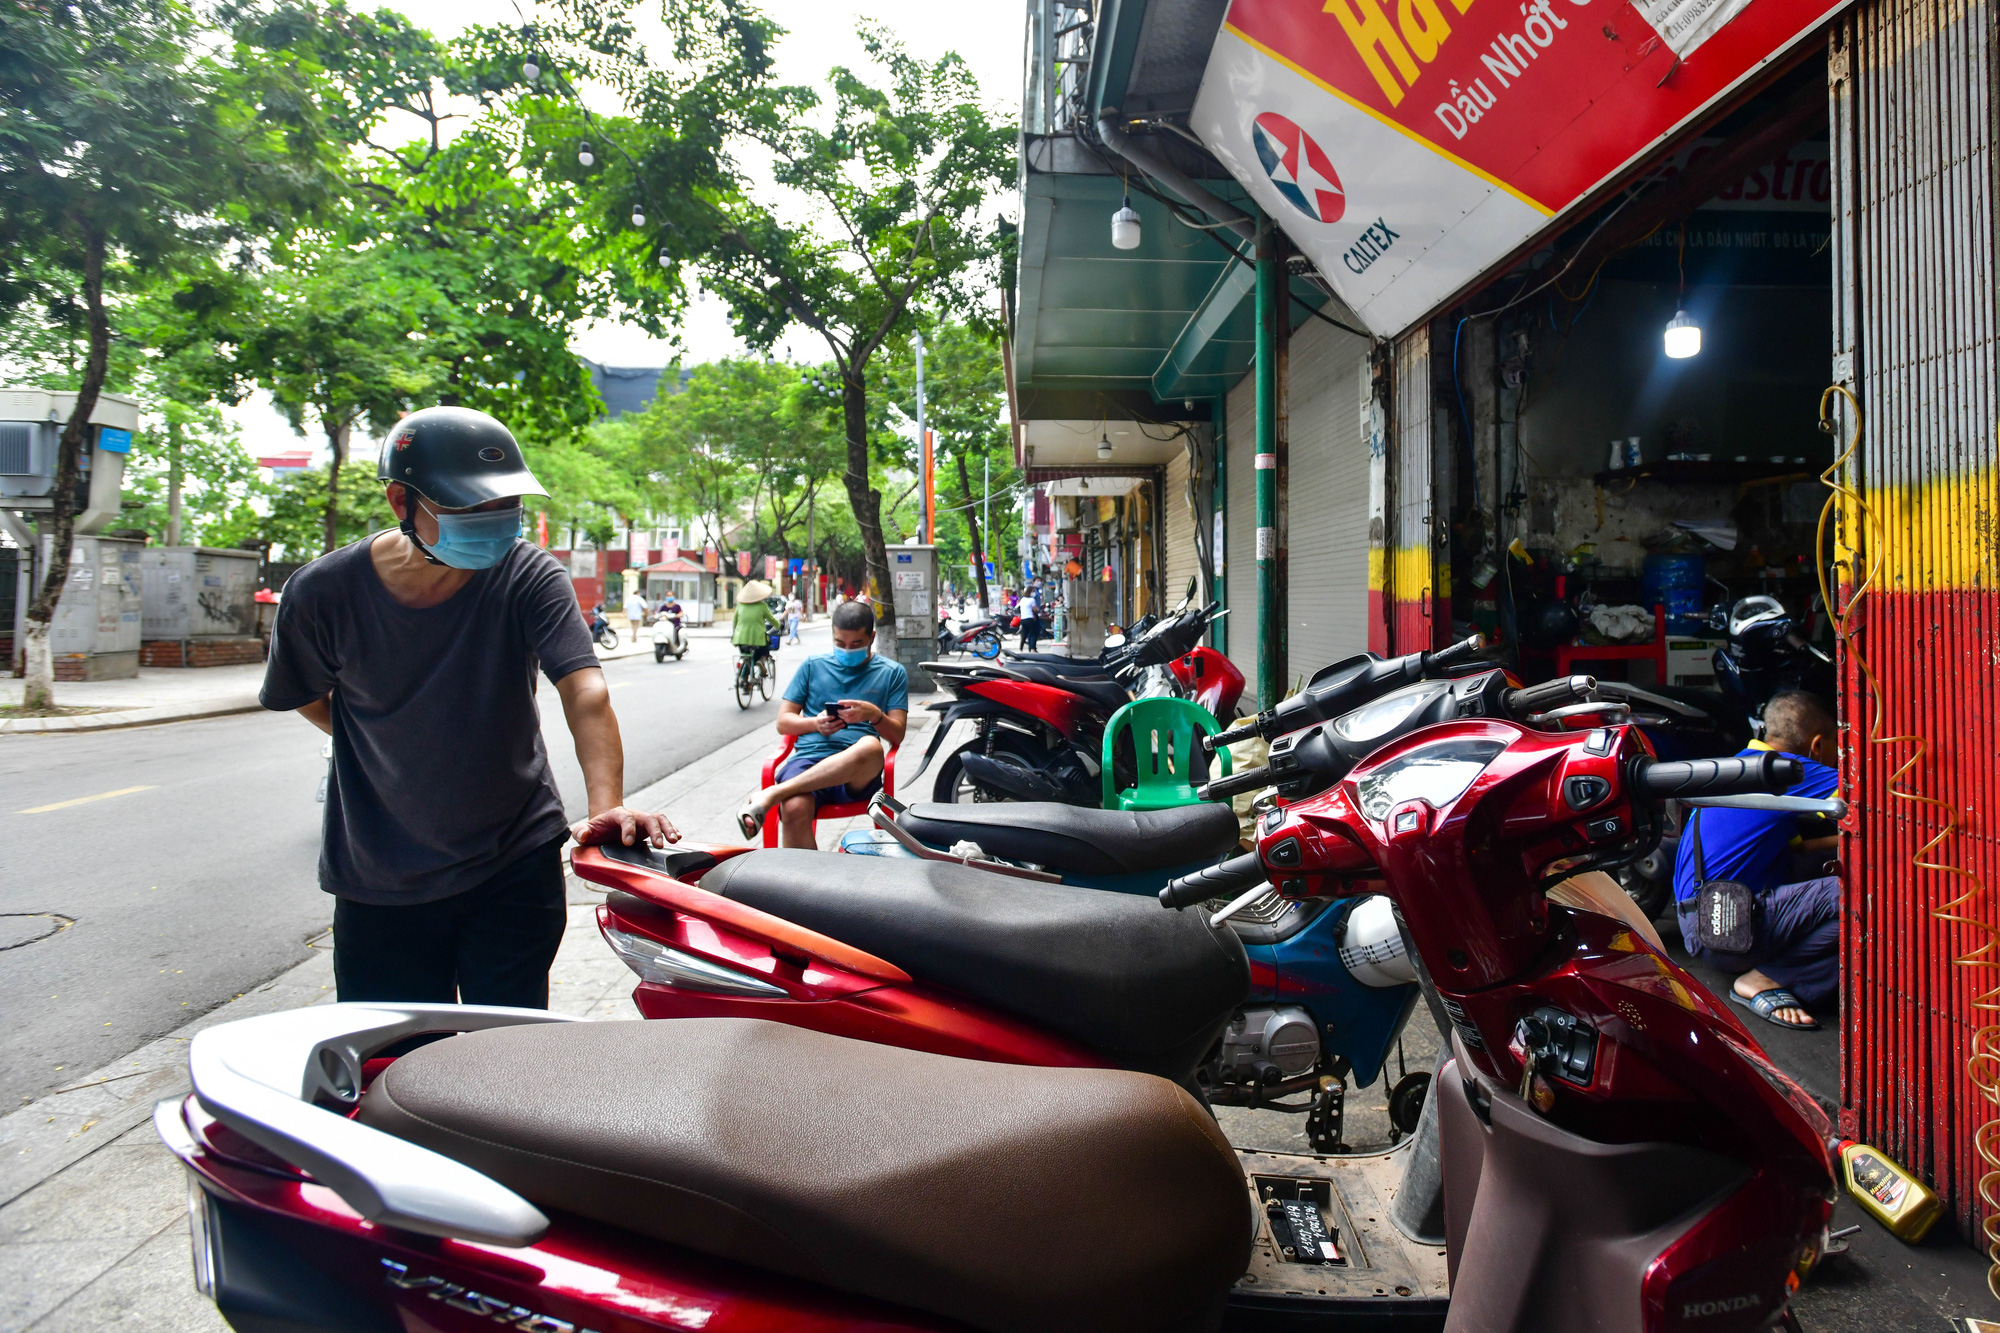 Hàng rửa ôtô, sửa xe máy đông khách khi Hà Nội nới giãn cách - Ảnh 2.